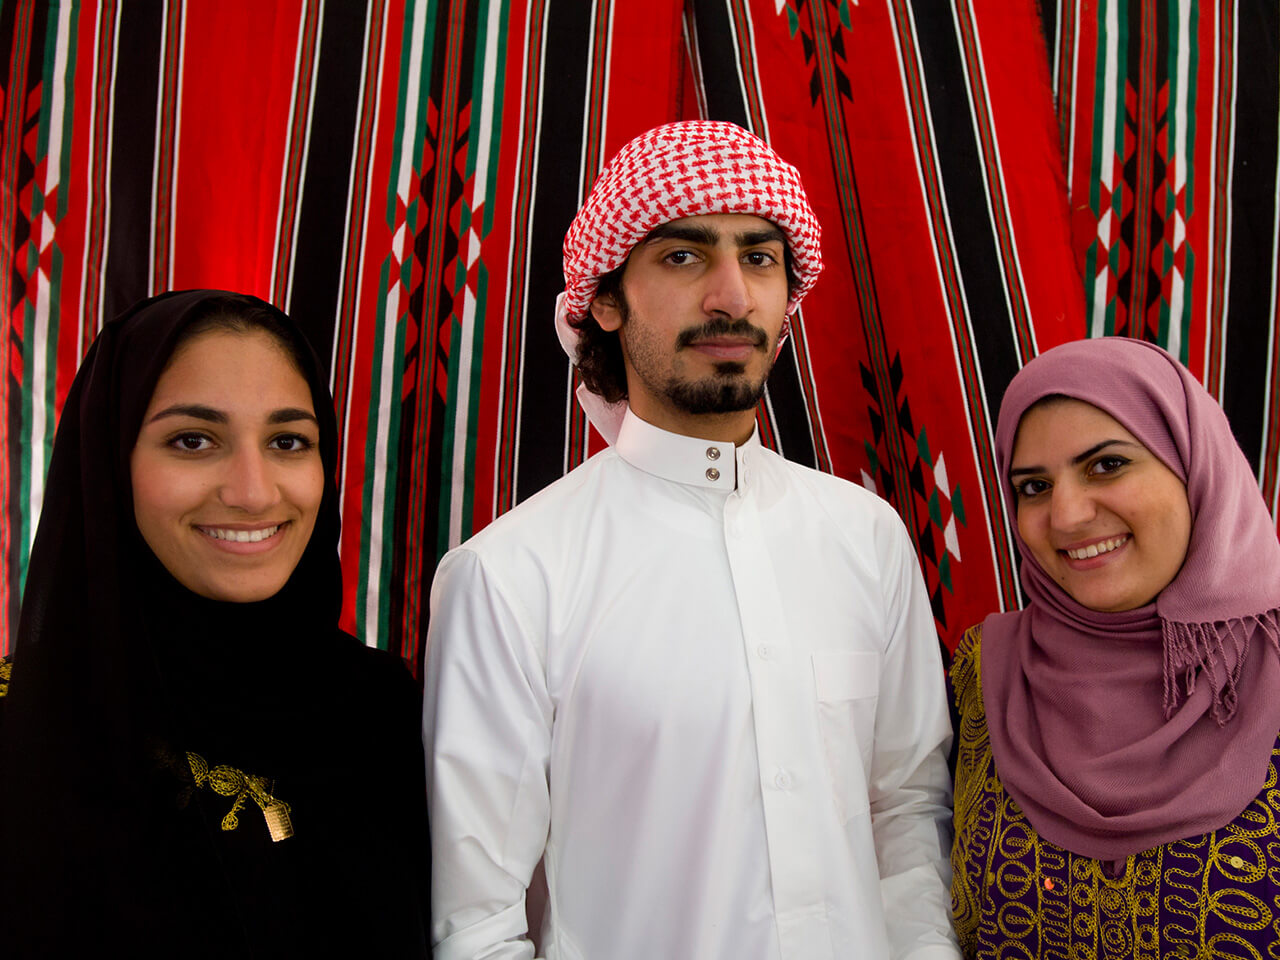 Students explore Qatari culture